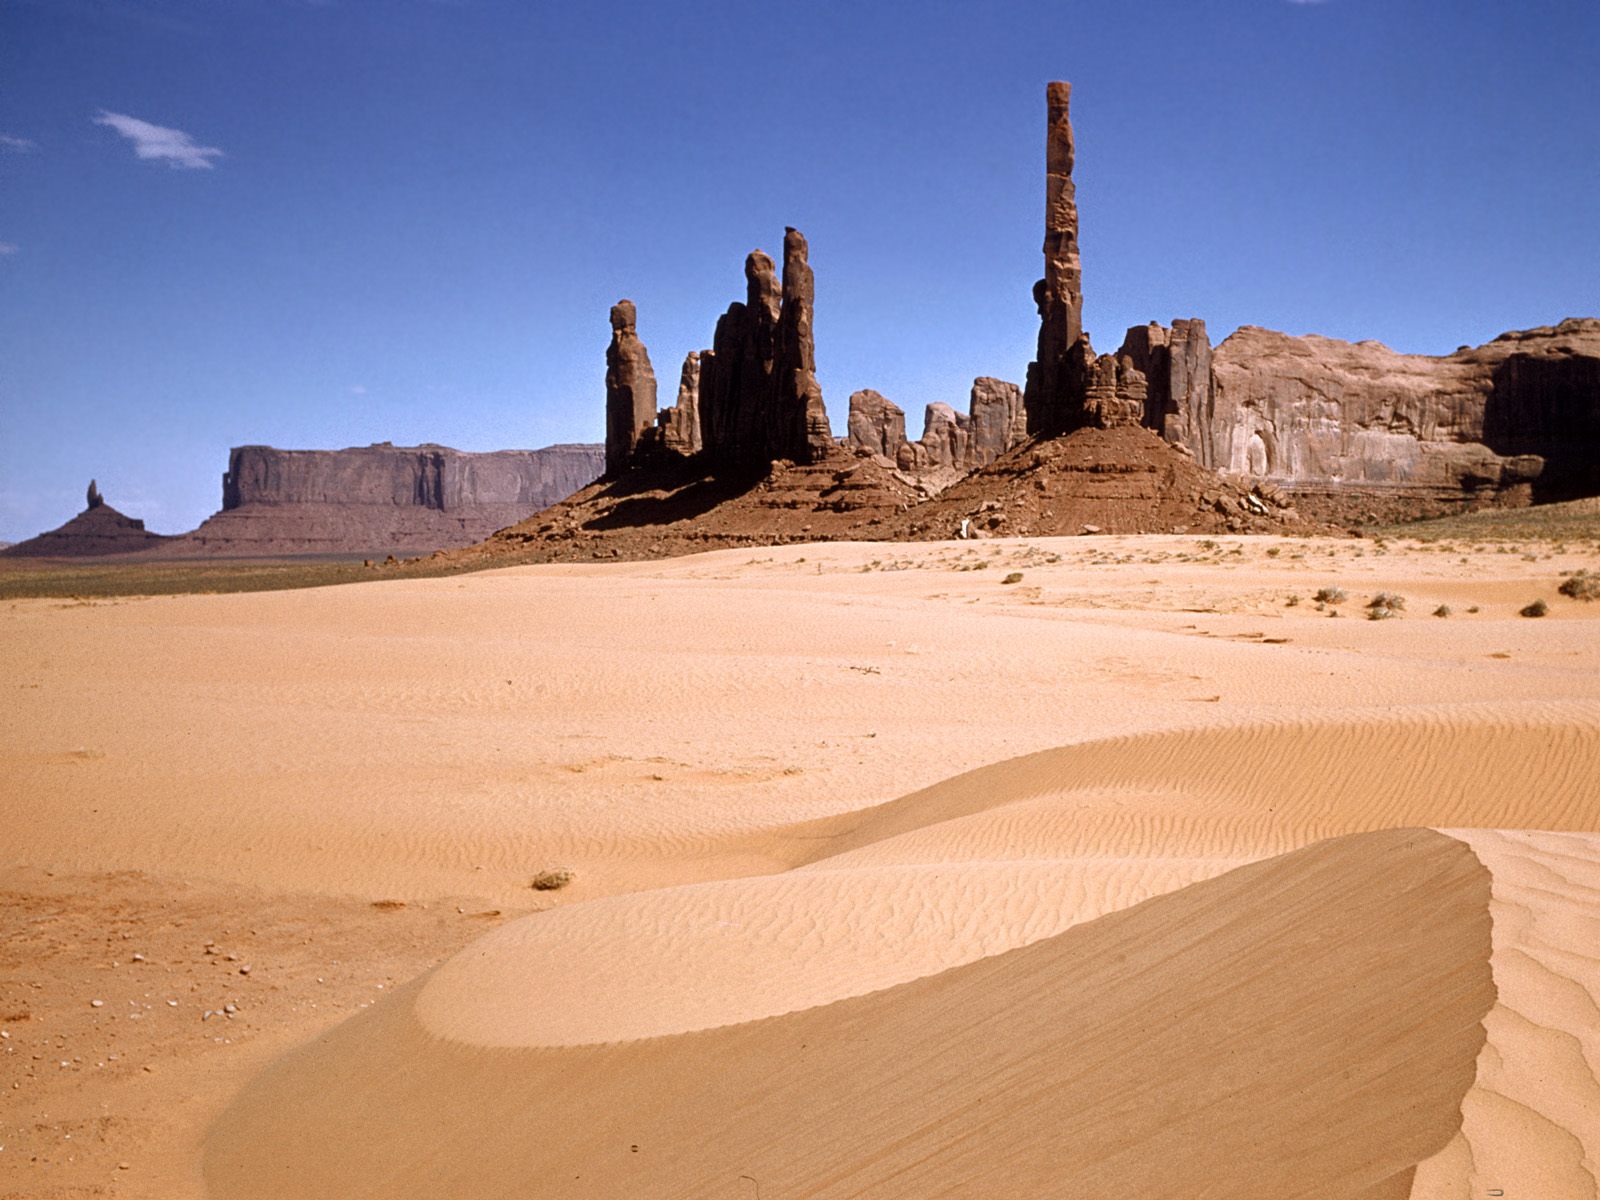 http://1.bp.blogspot.com/-l00rBkOub8k/TdiM5GsSogI/AAAAAAAADGs/0mWWm5-Lg_0/s1600/Monuments%252C+Desert+Southwest+-+1600x1200+-+ID+2517+-+PREMIUM.jpg